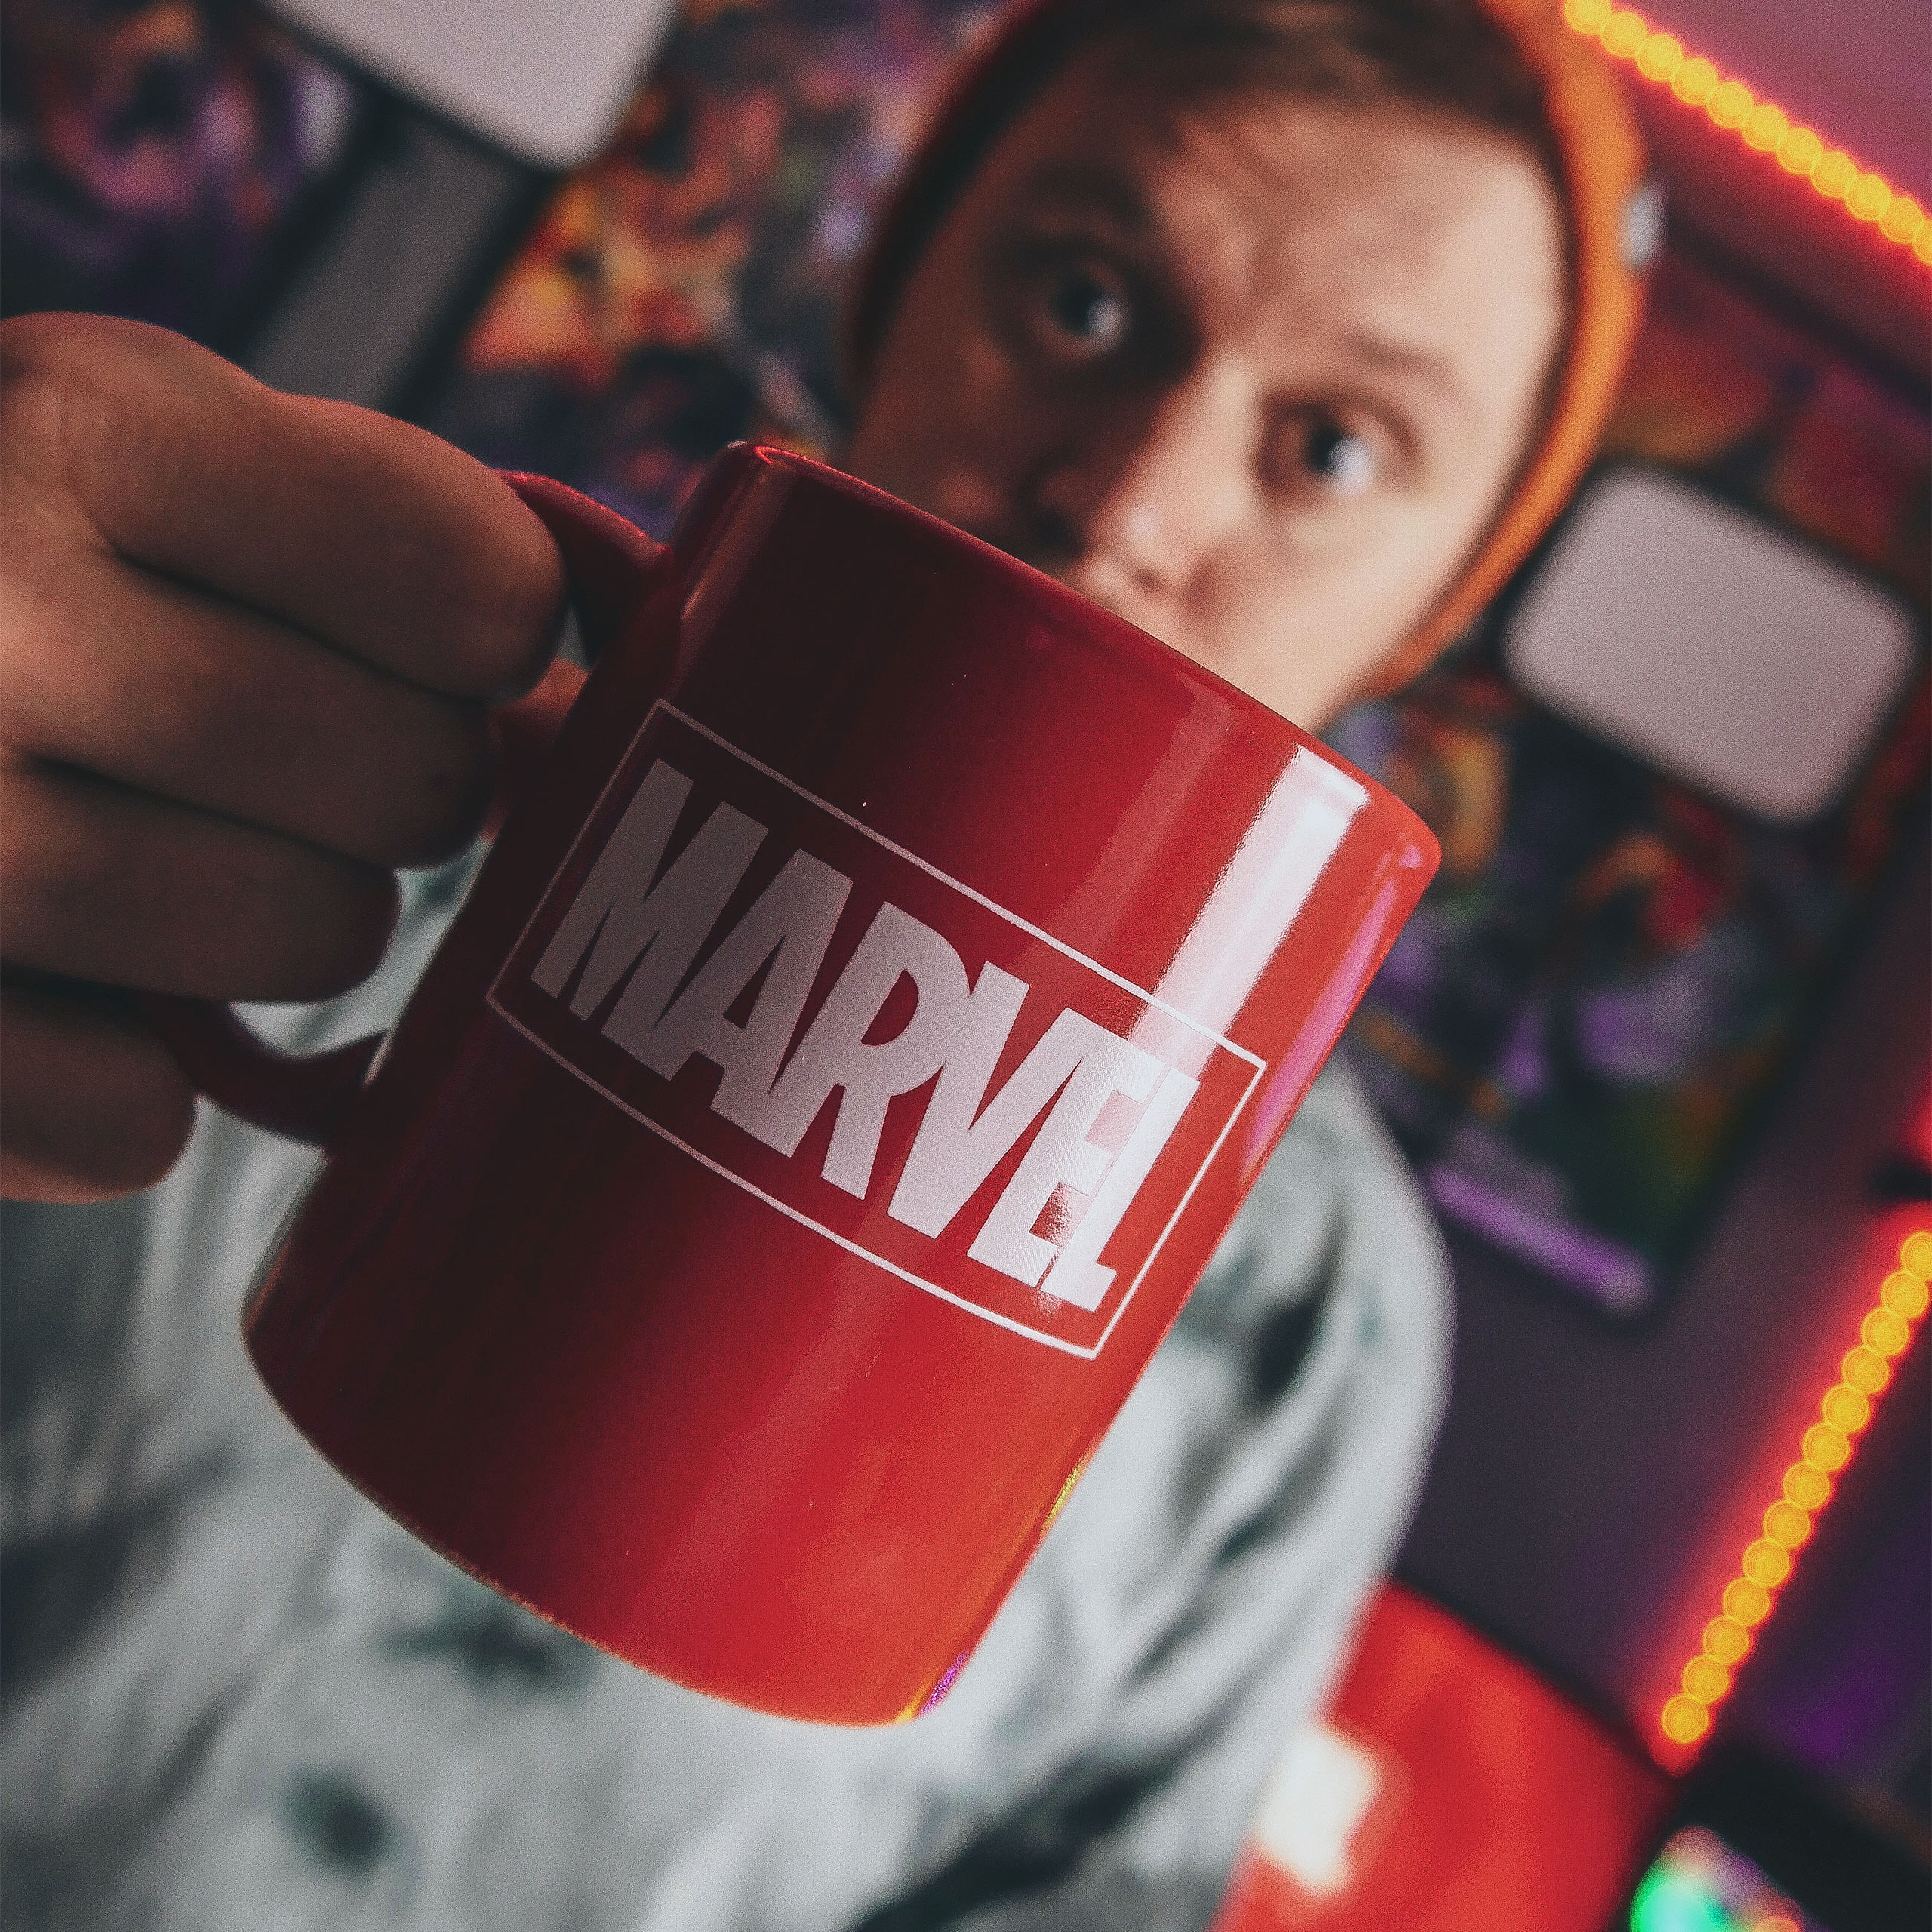 Marvel - Logo Tasse rot